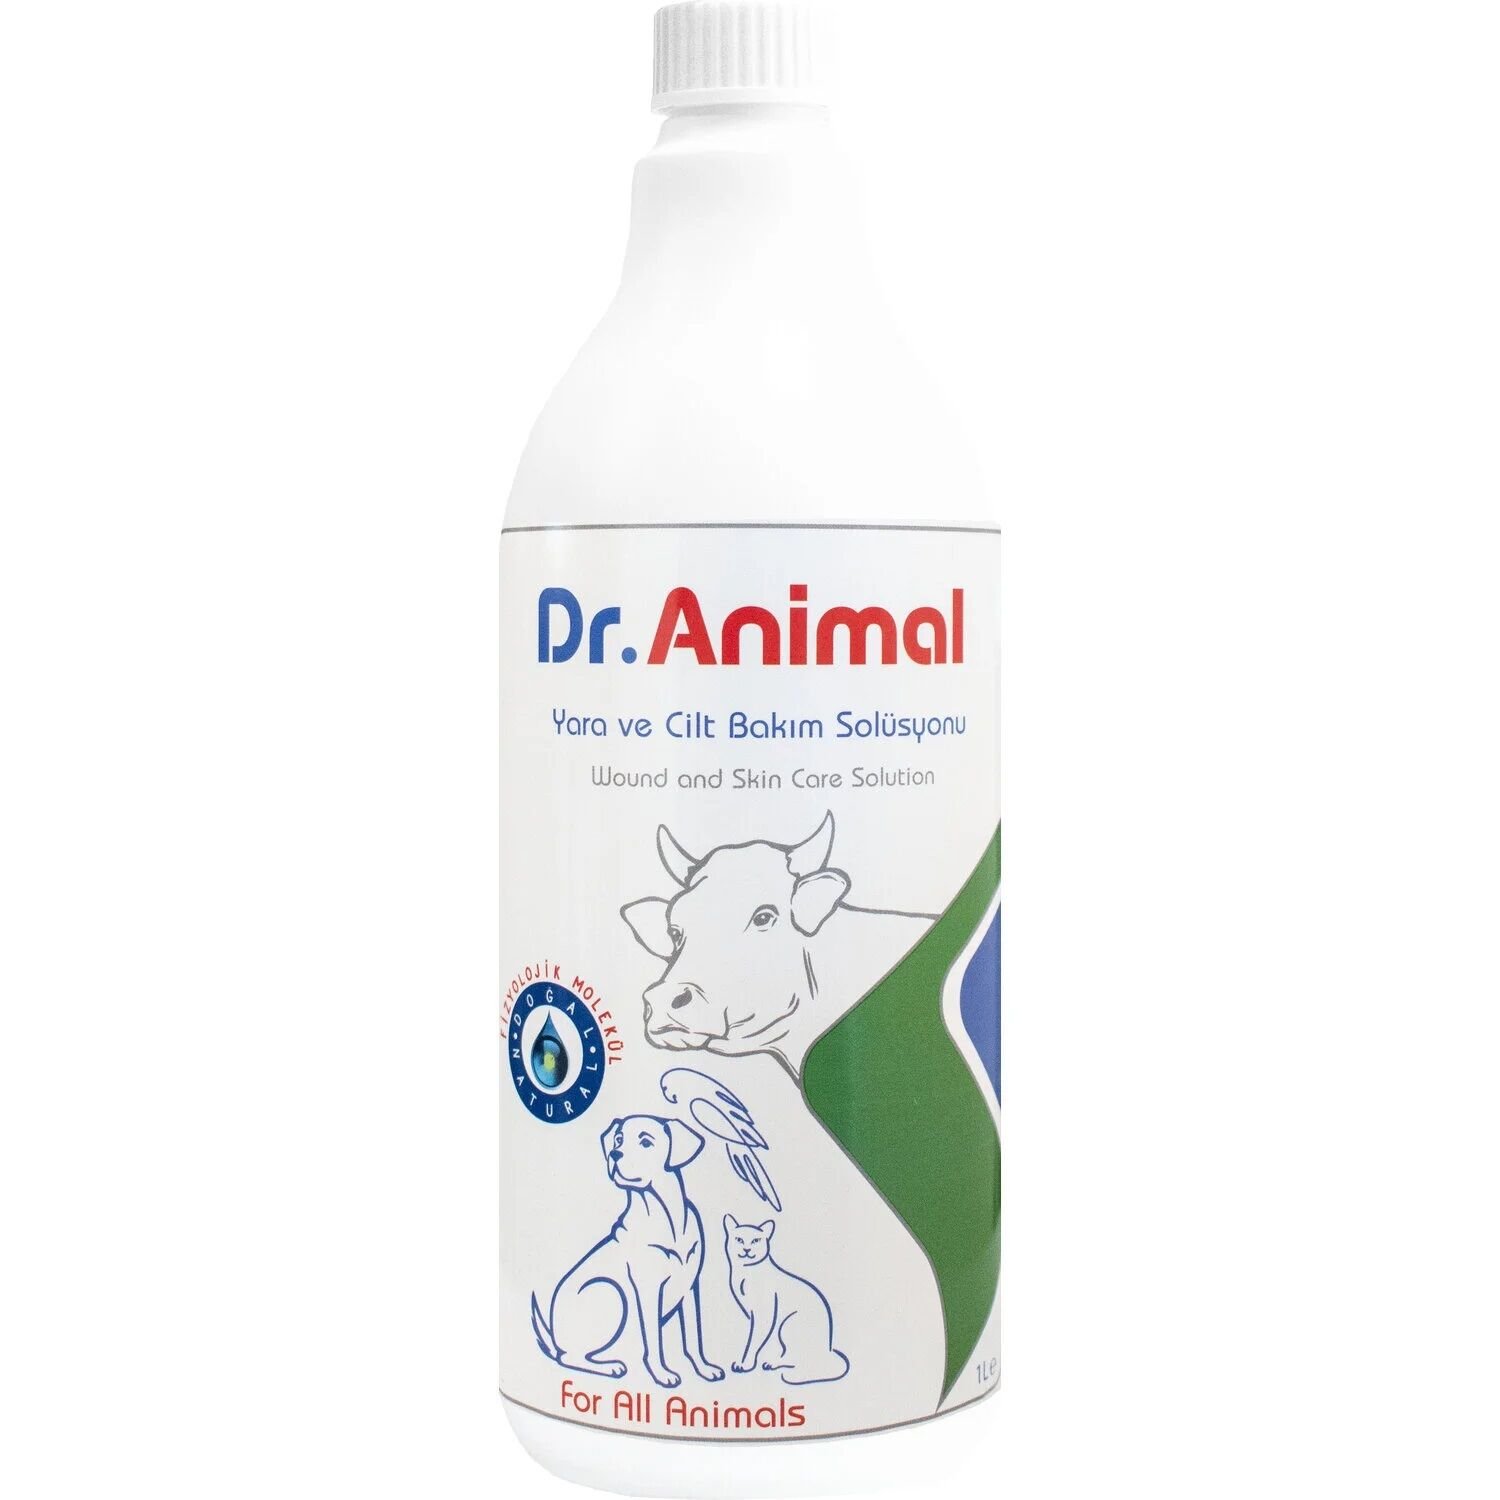 Dr. Animal 1 lt Yara Ve Cilt Bakım Solüsyonu